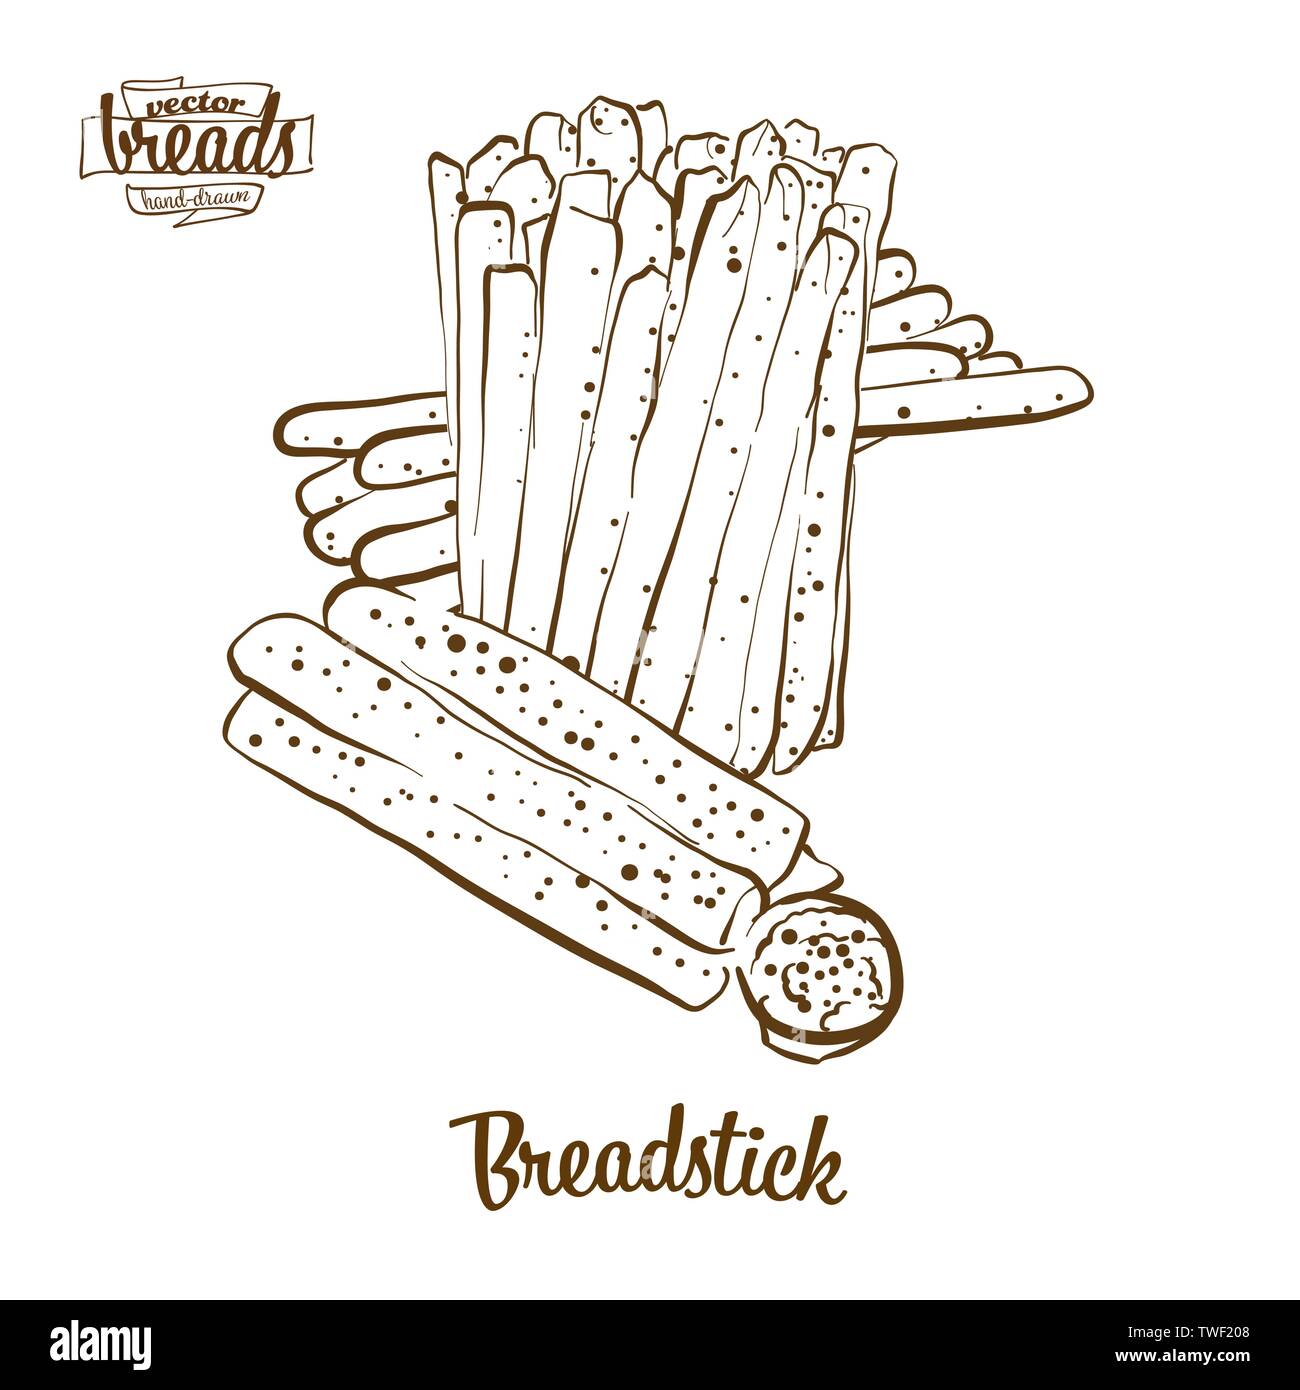 Breadstick Brot vektor Zeichnung. Essen Skizze von trockenem Brot, in der Regel in Italien bekannt. Bäckerei Abbildung Serie. Stock Vektor